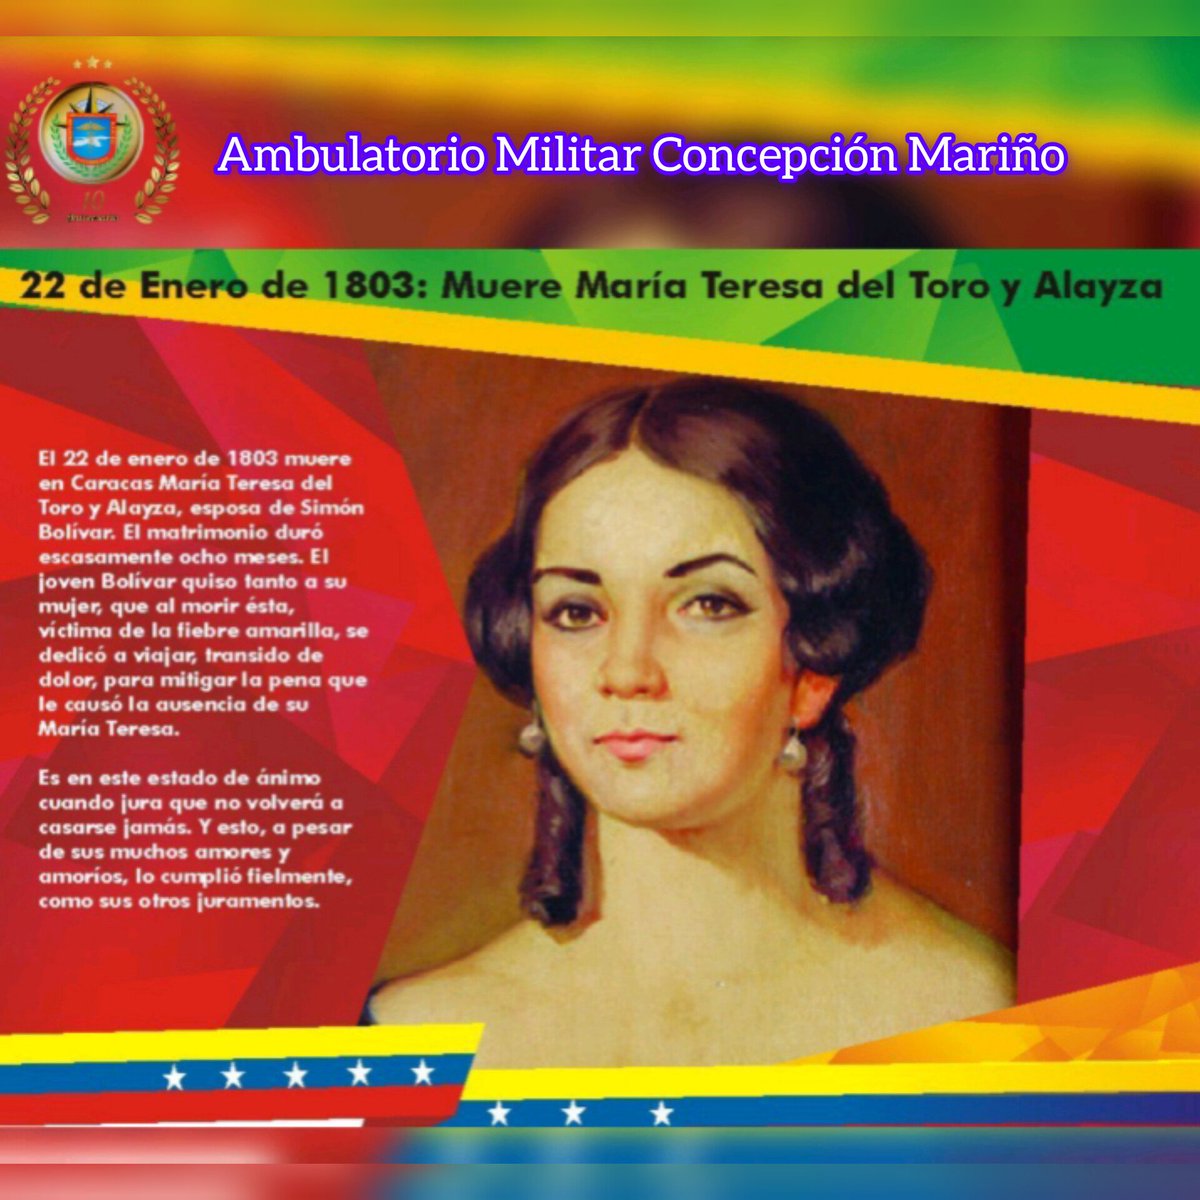 #22deEnero
Víctima de la fiebre amarilla, el 22 de enero de 1803, muere en Caracas María Teresa del Toro y Alayza, esposa de Simón Bolívar.
#RedSanitariaMilitar
#ambumilcm